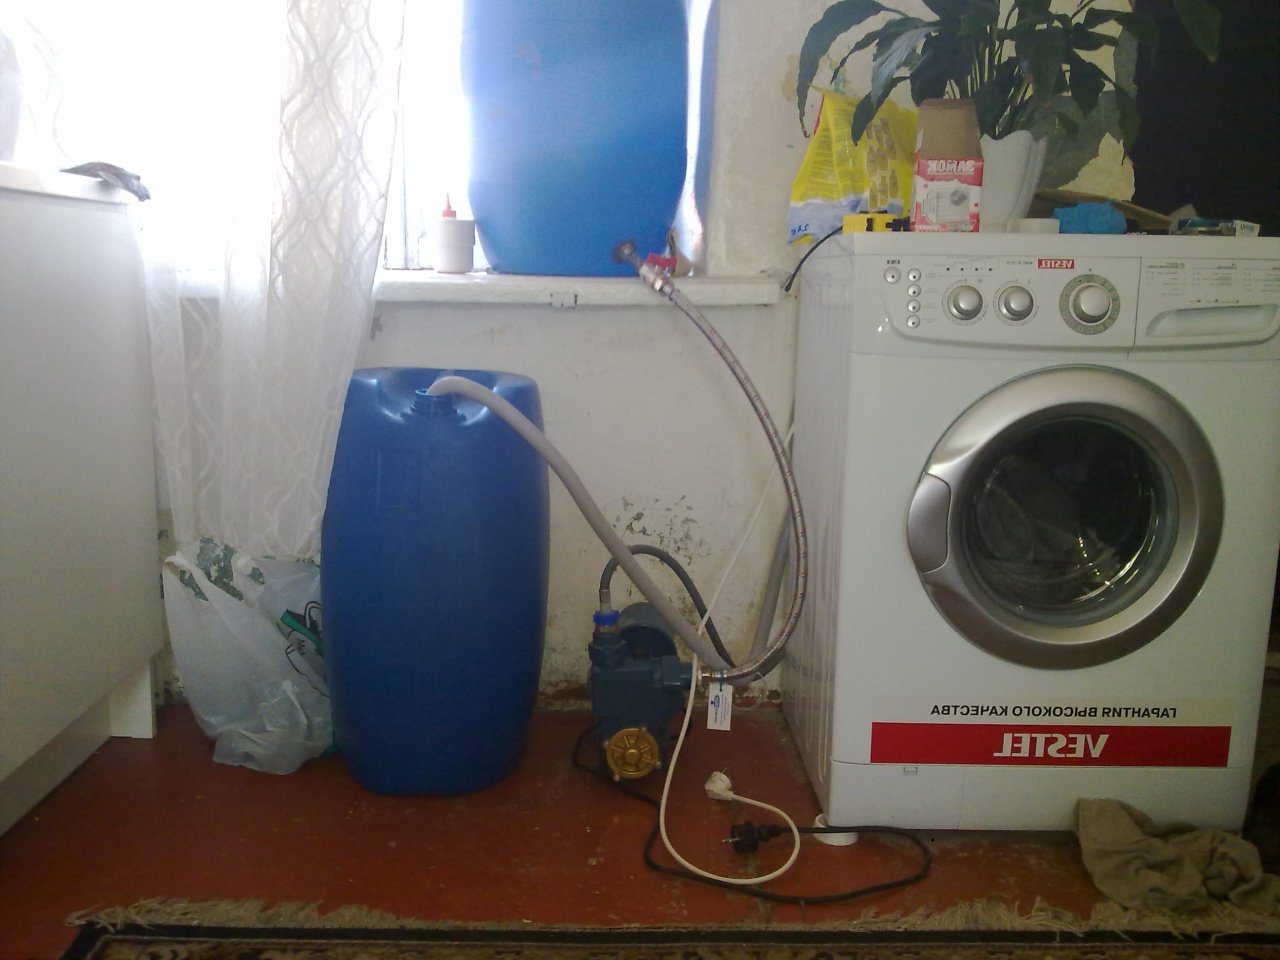 conectar uma máquina de lavar sem água corrente